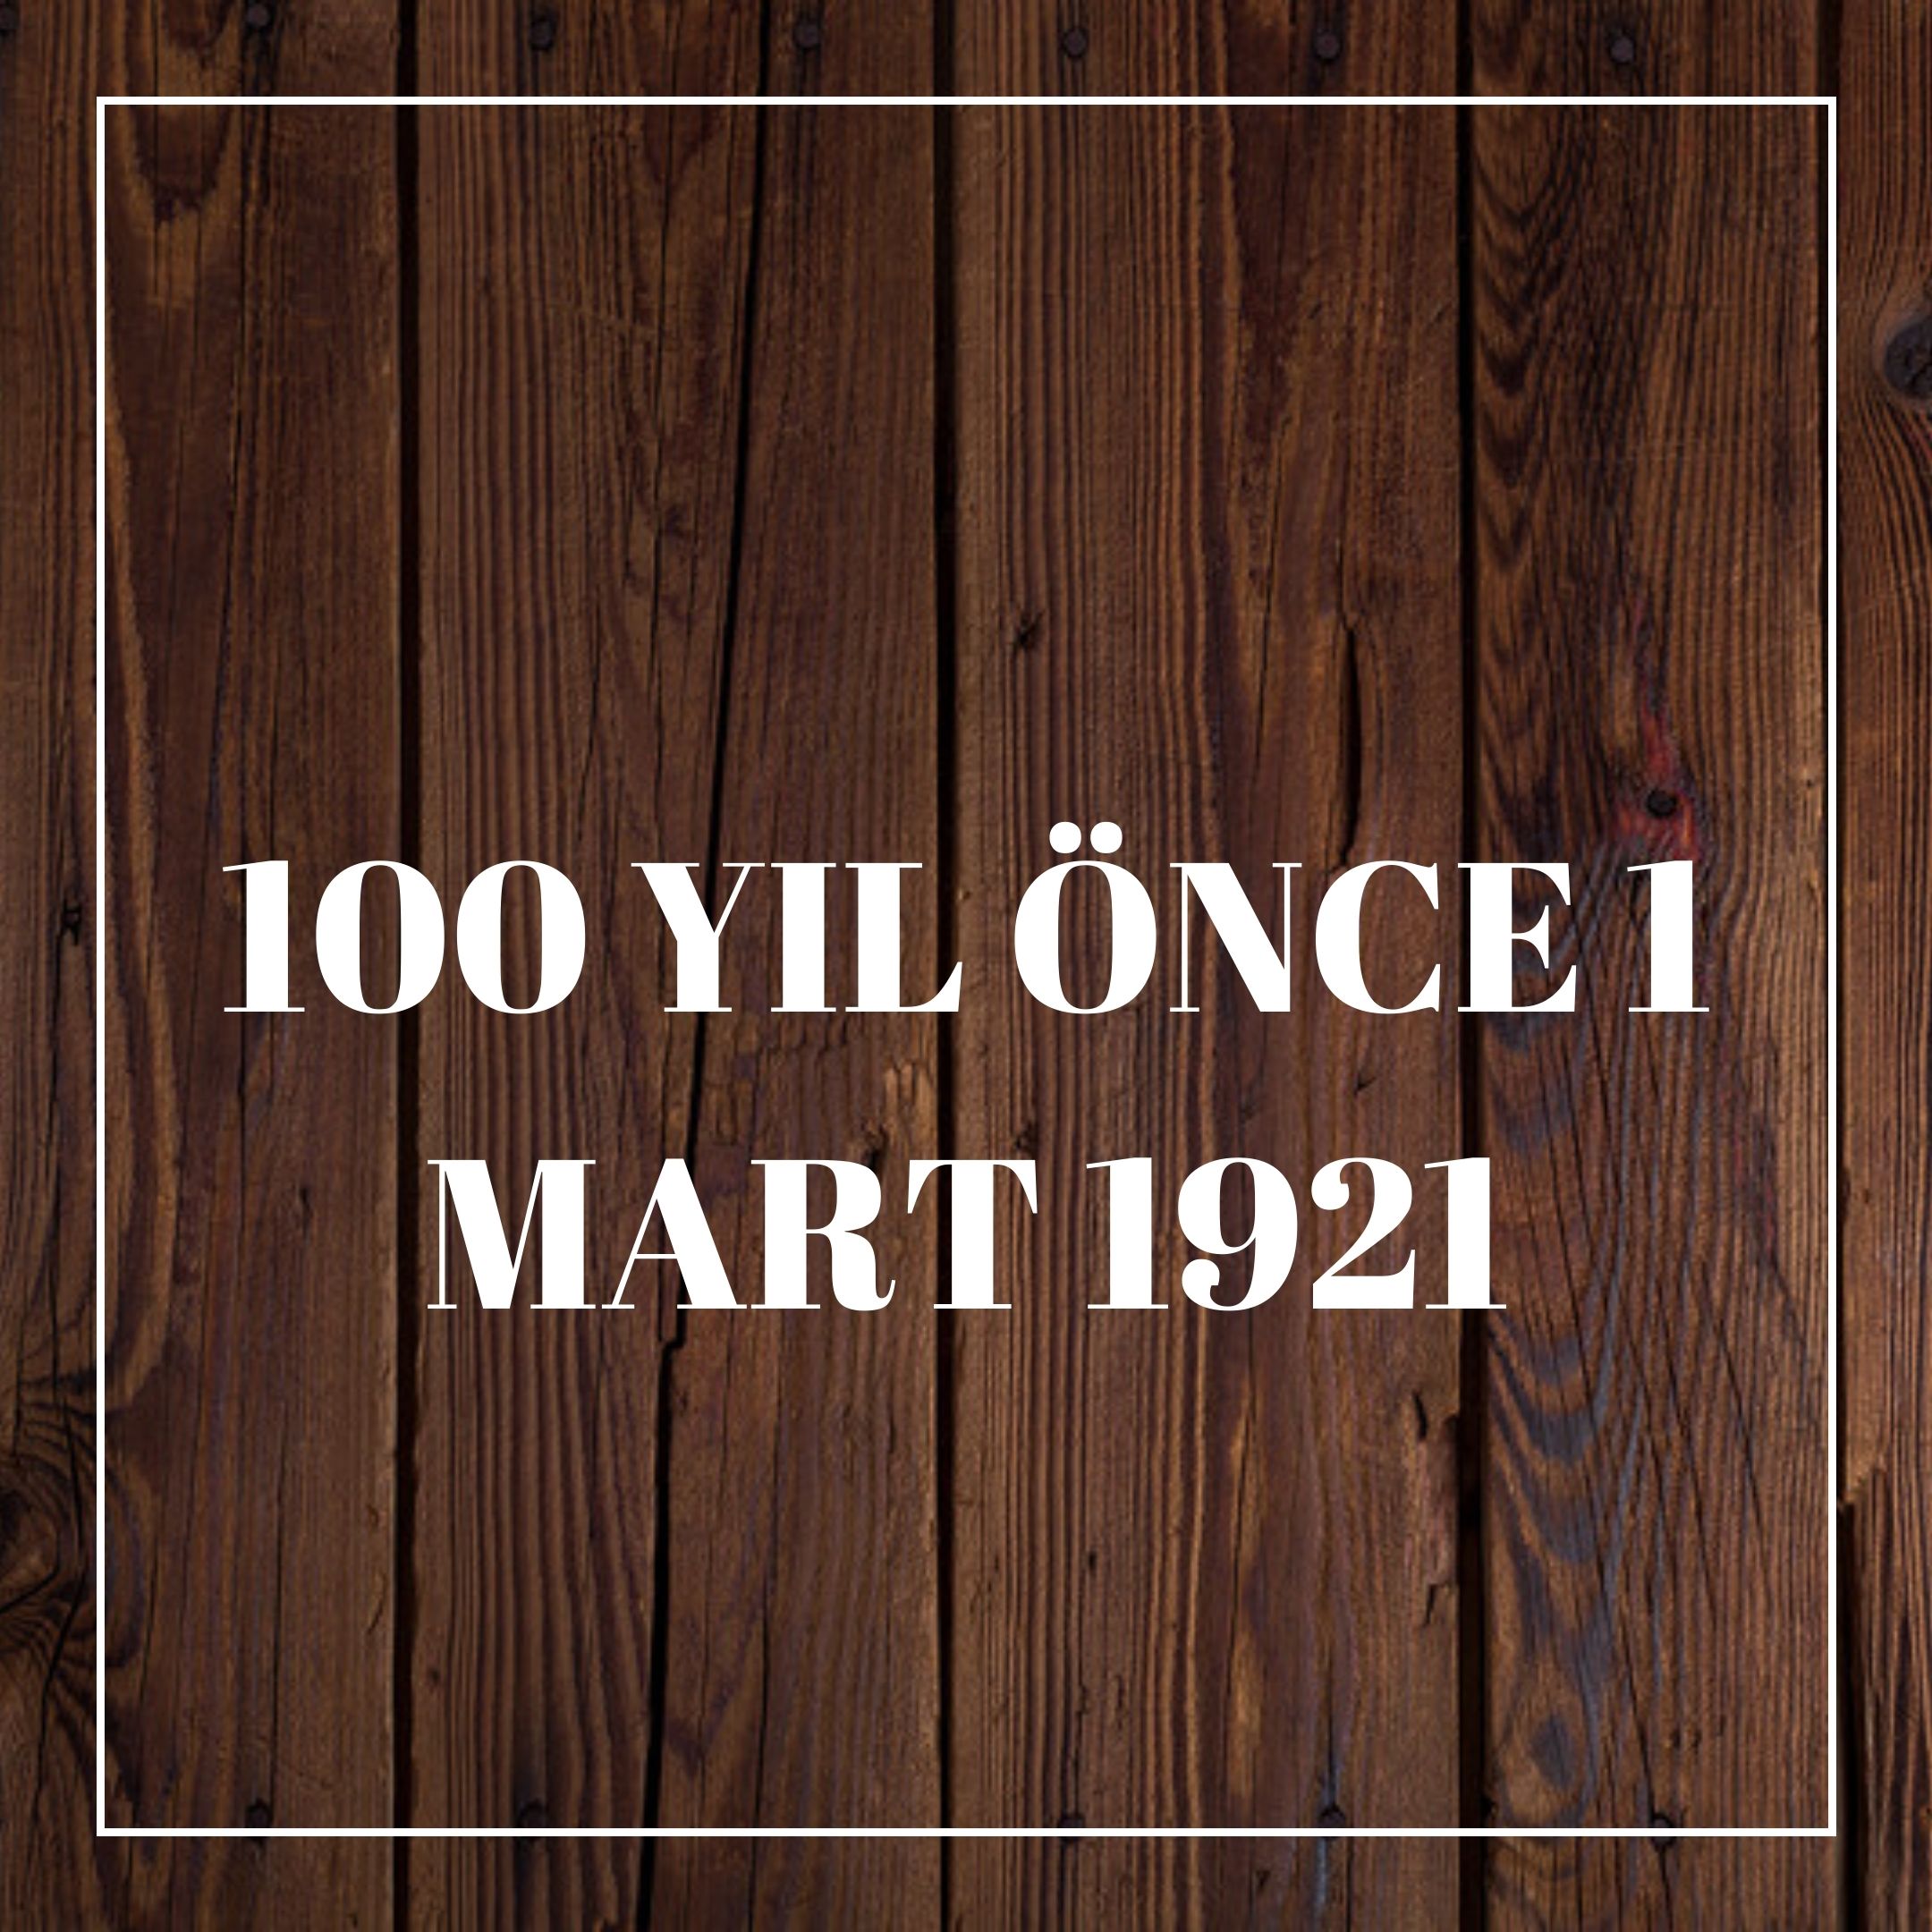 100 YIL ÖNCE 1 MART 1921